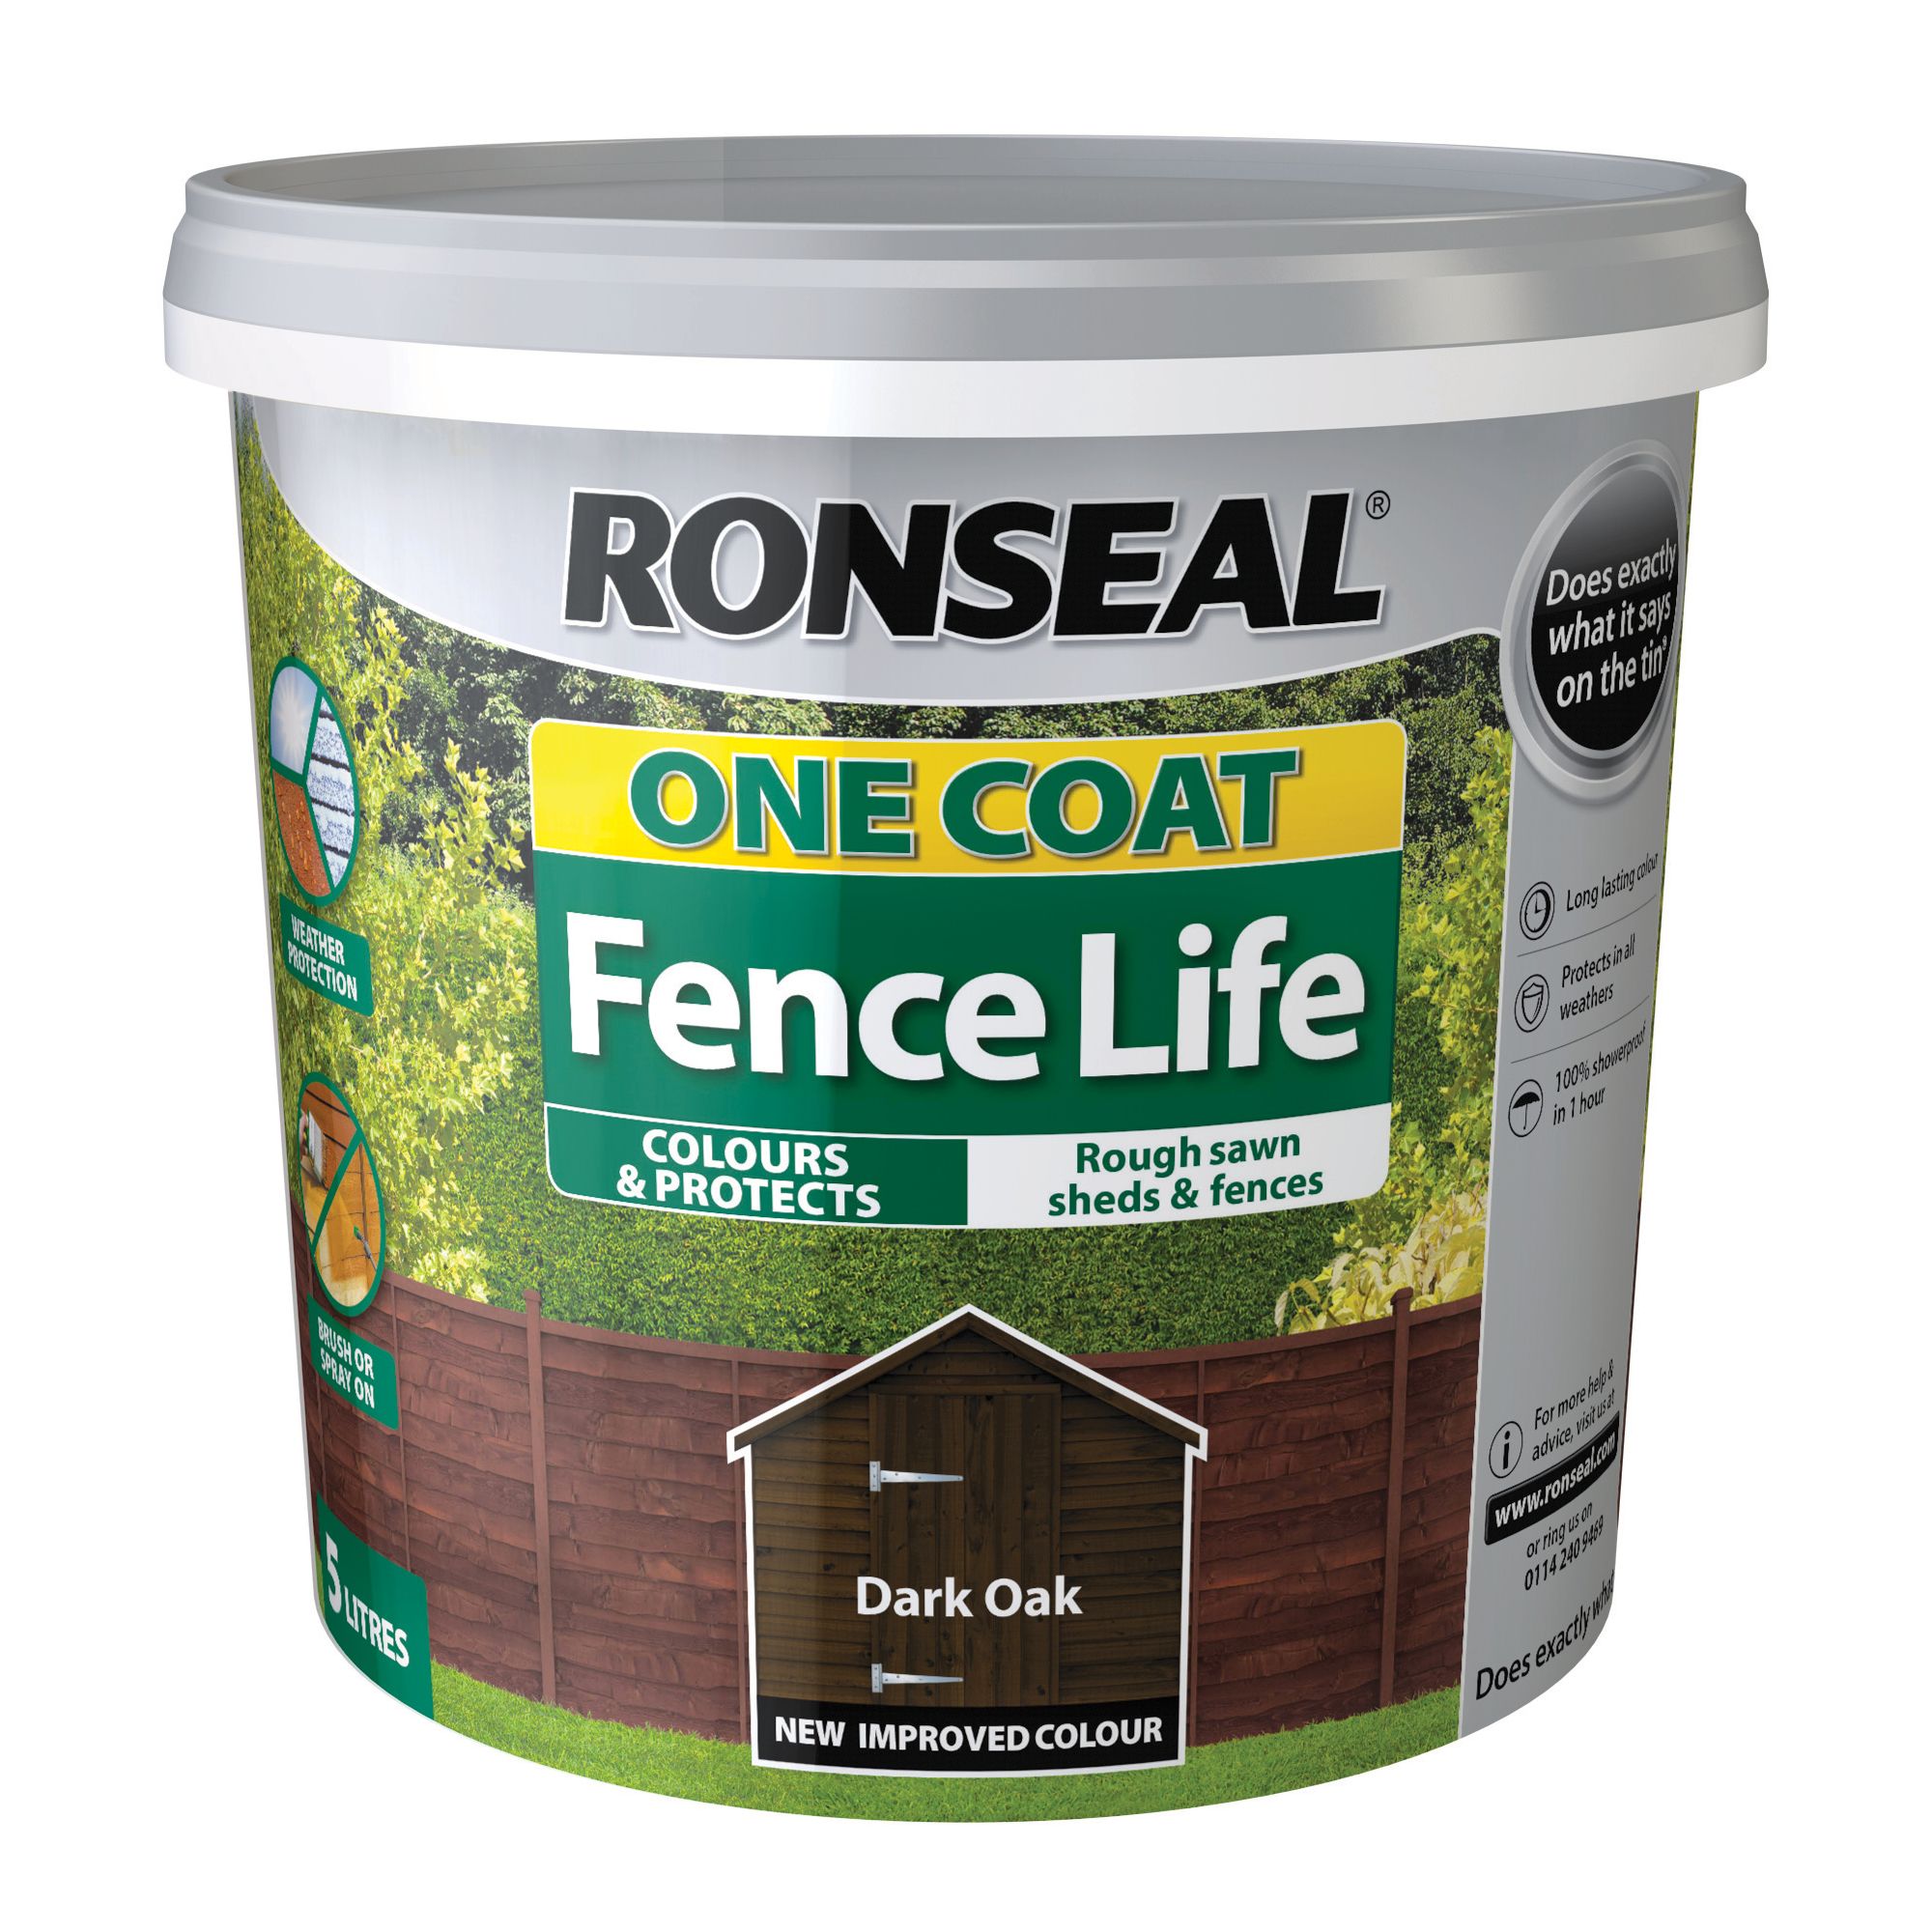 Ronseal One Coat Fence Life Dark oak Matt Exterior Wood paint, 5L Tub